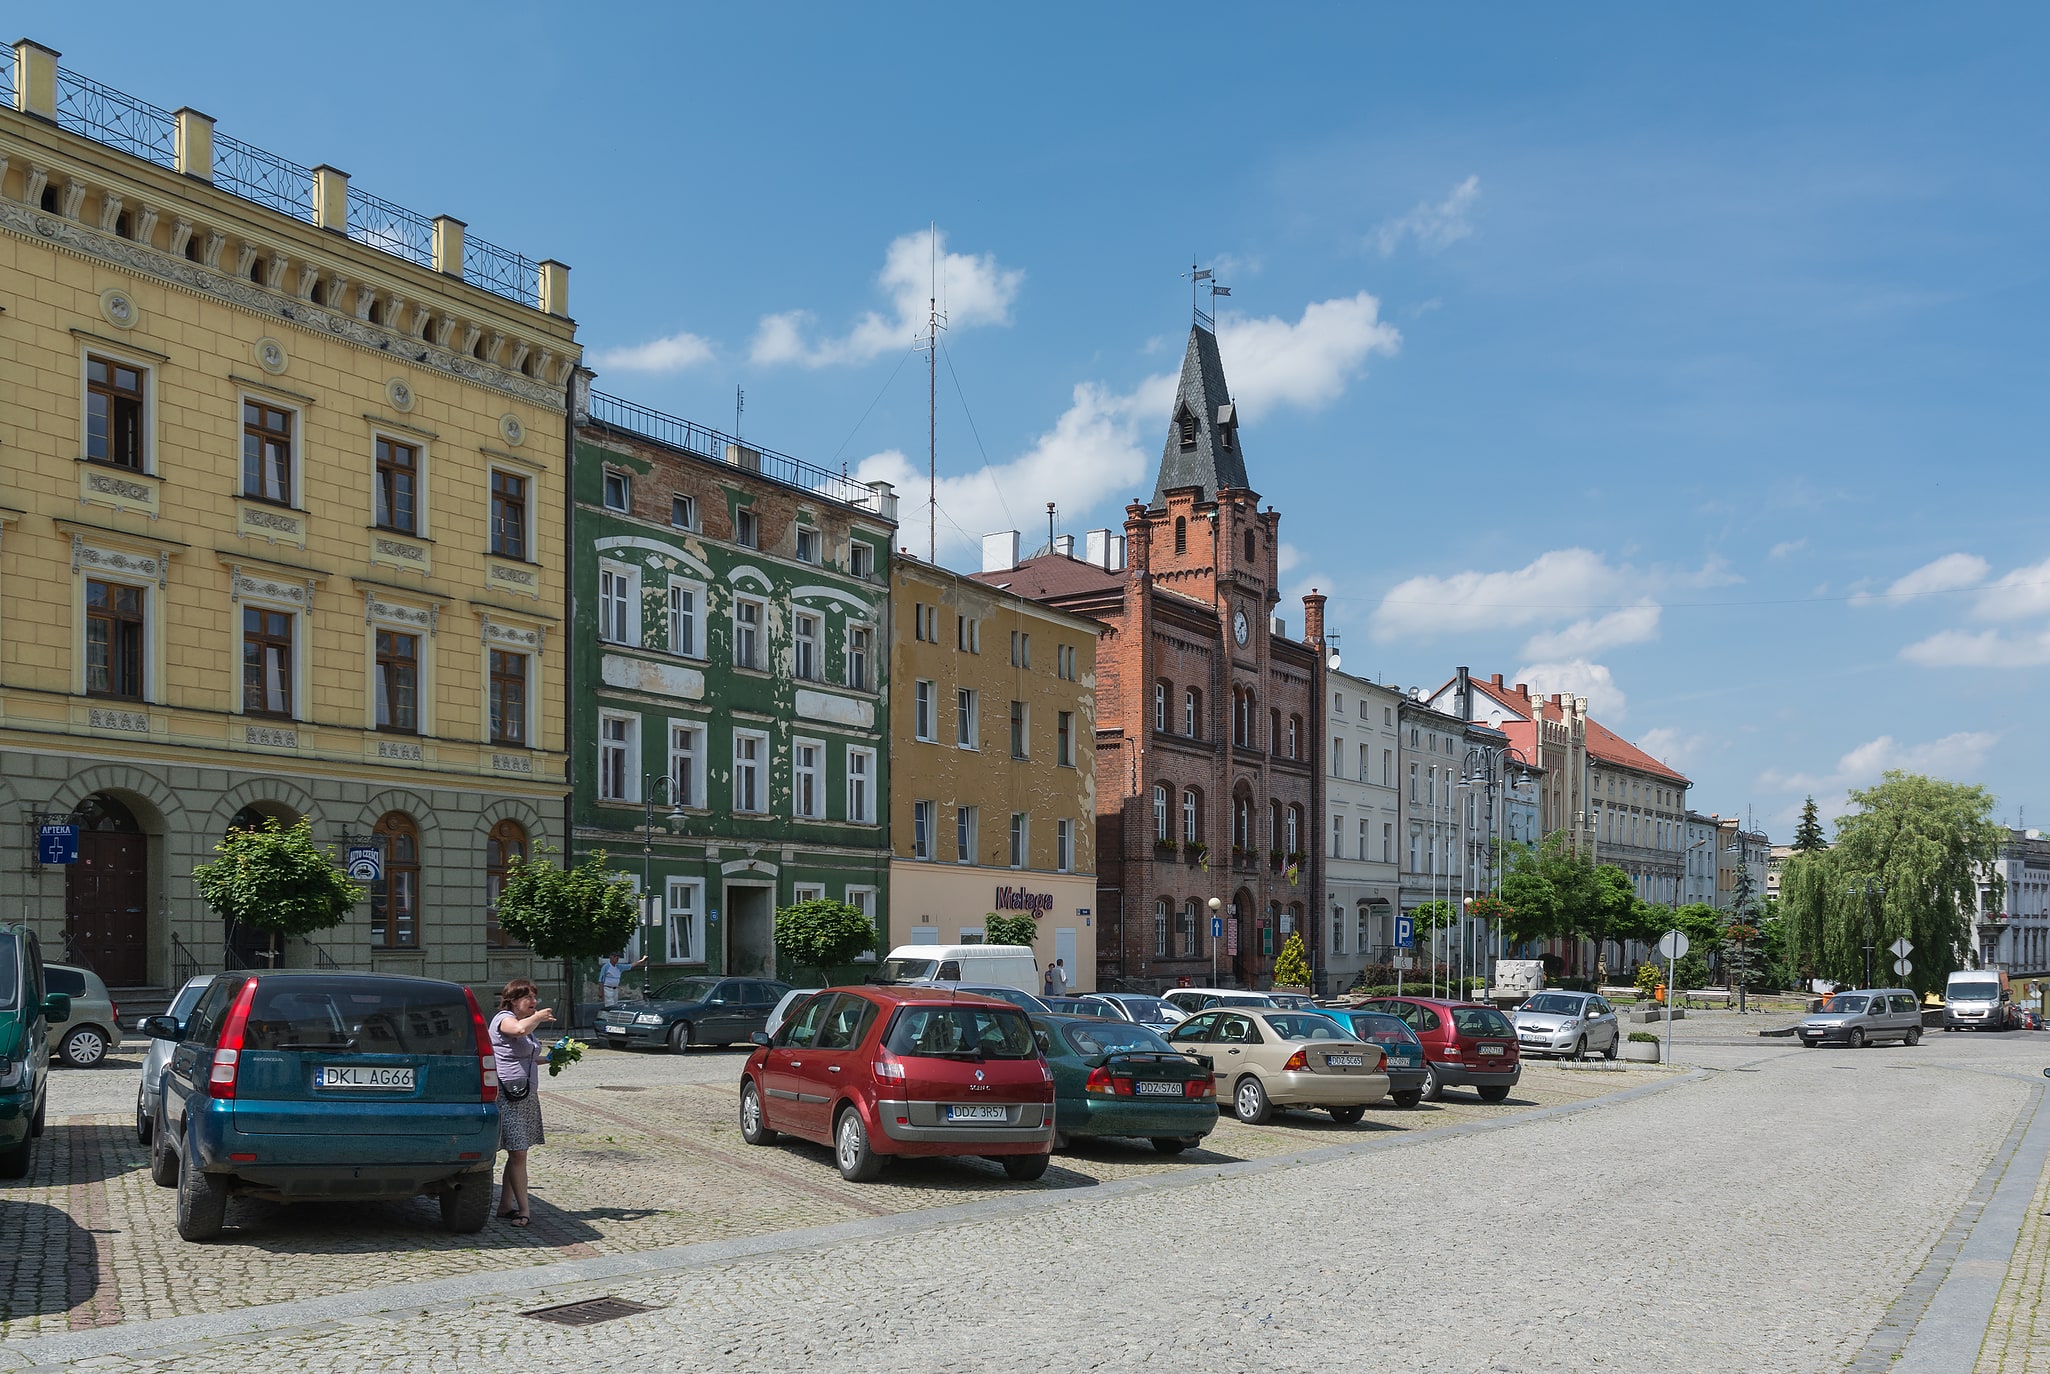 Niemcza, Polen